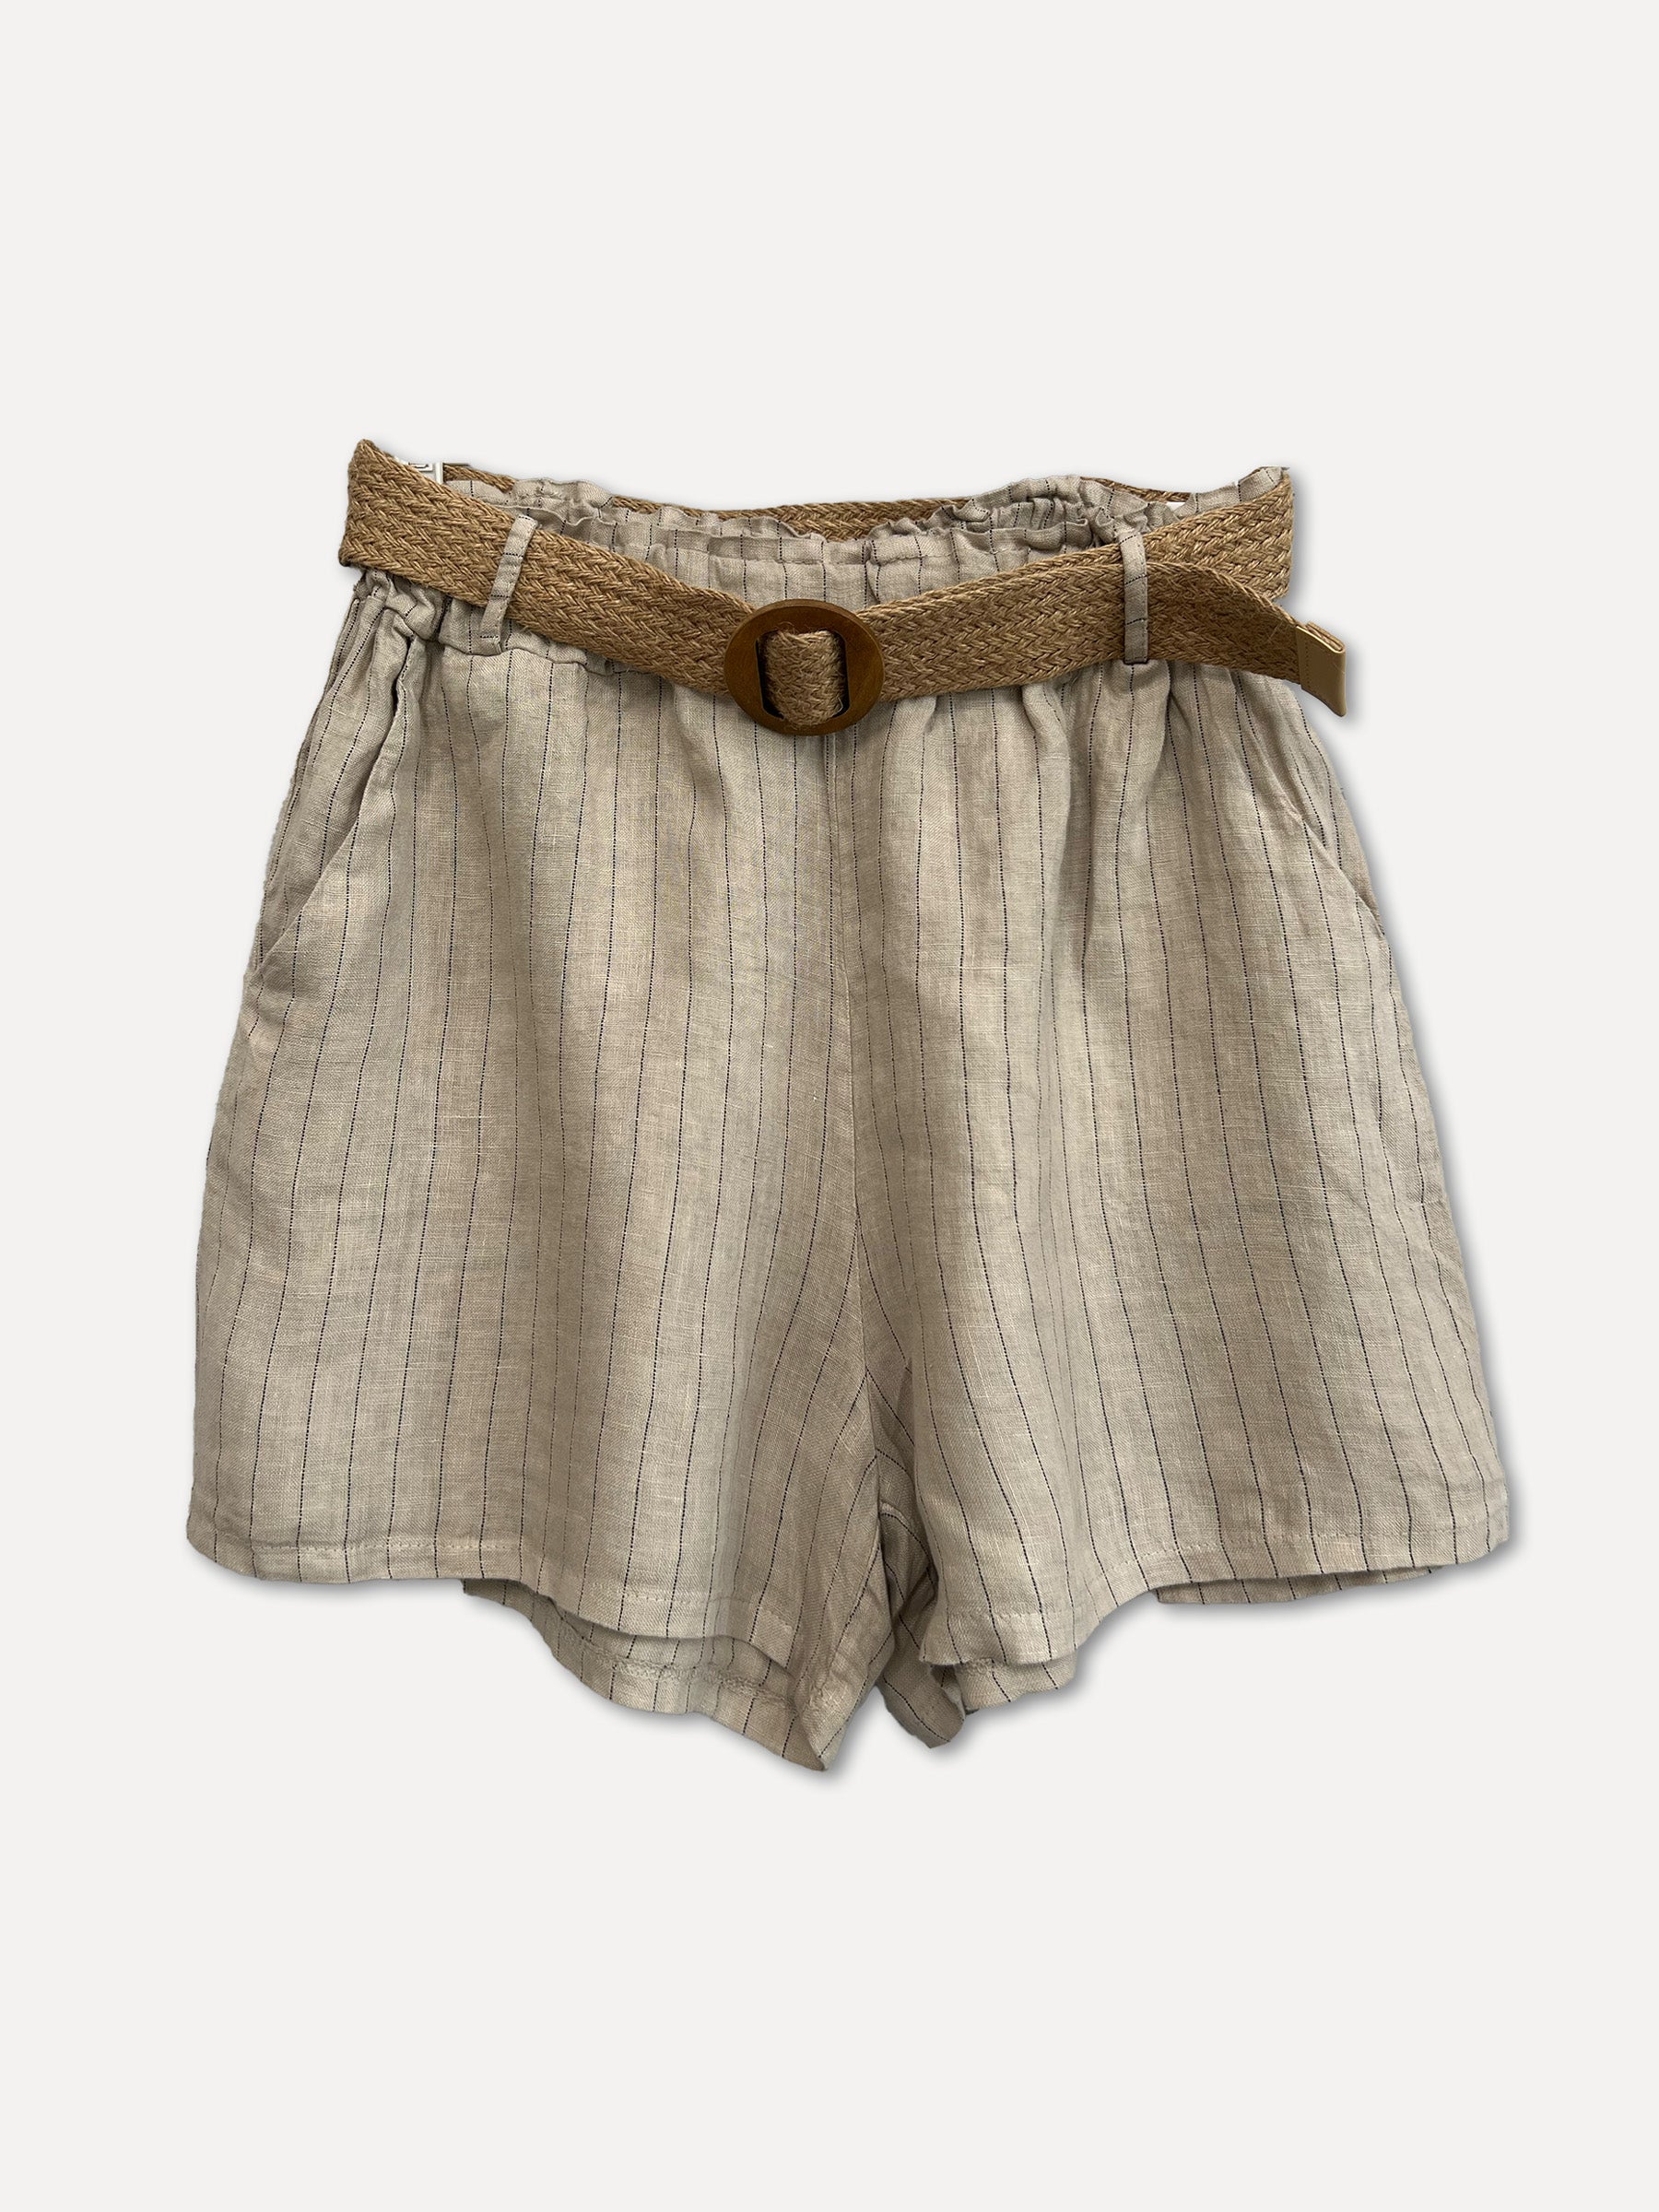 VIENNA Stripe Shorts, Beige